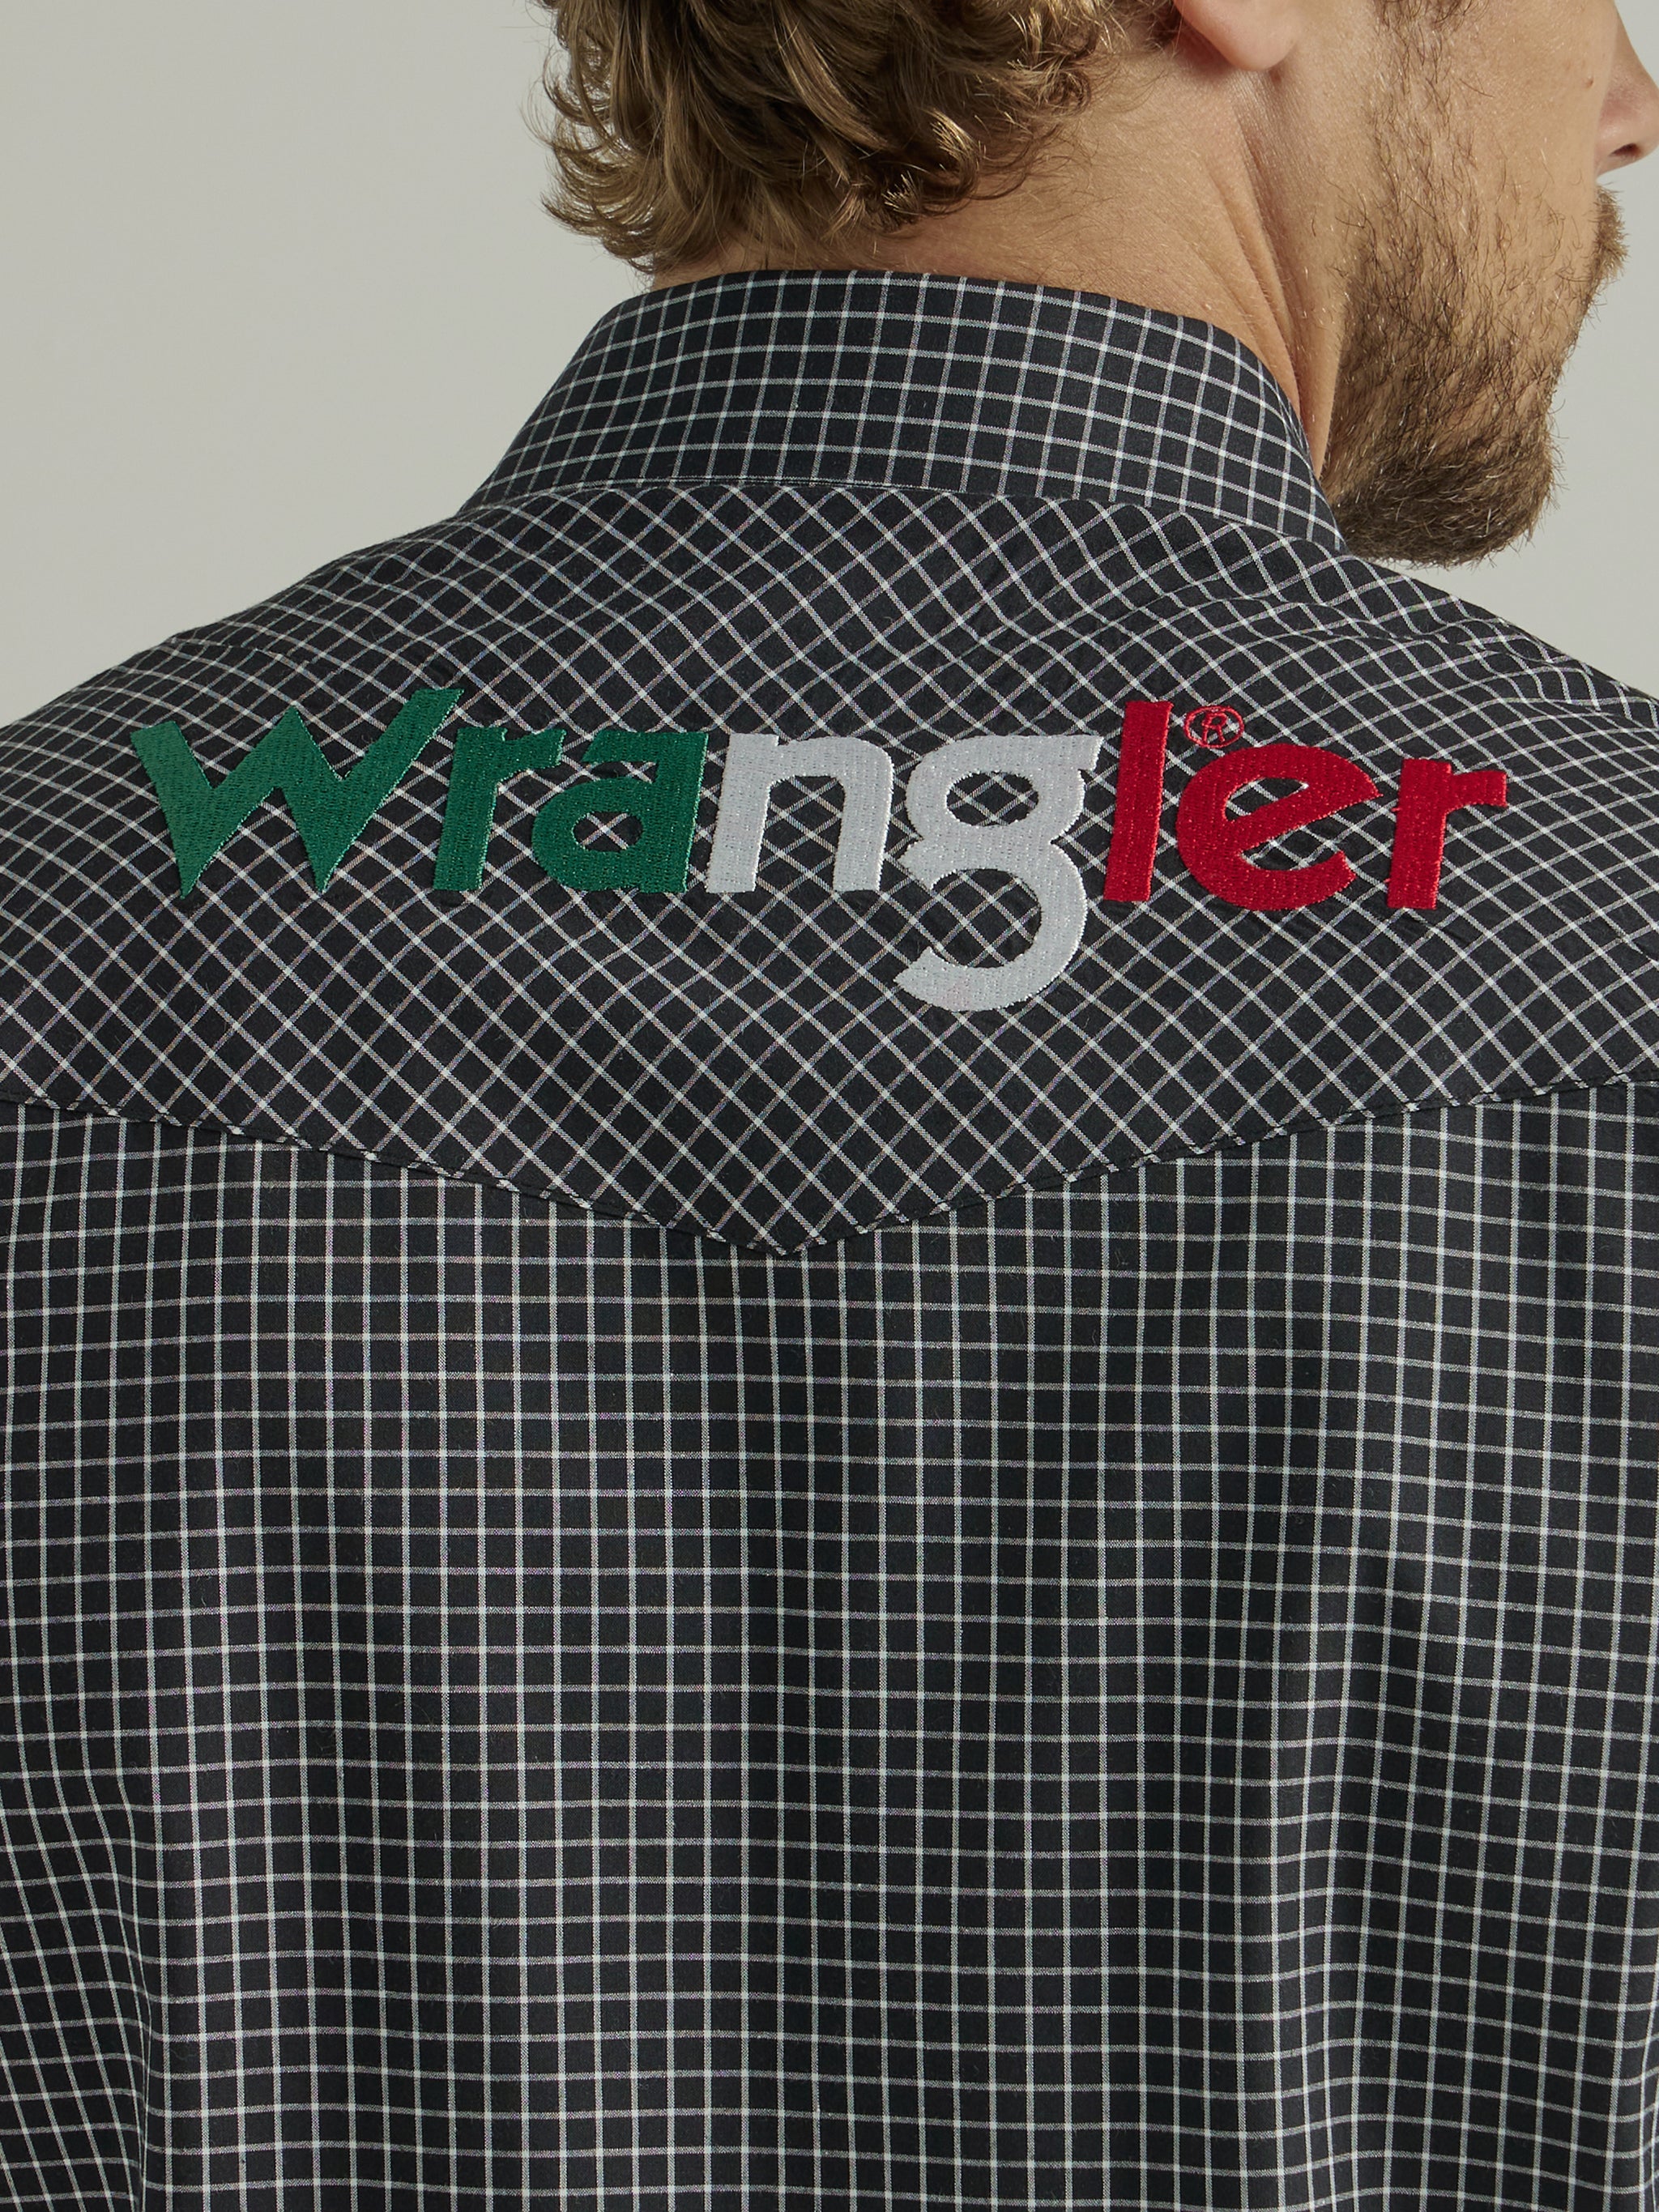 Wrangler Men's Mexi Logo Black Long Sleeve Shirt Black S at